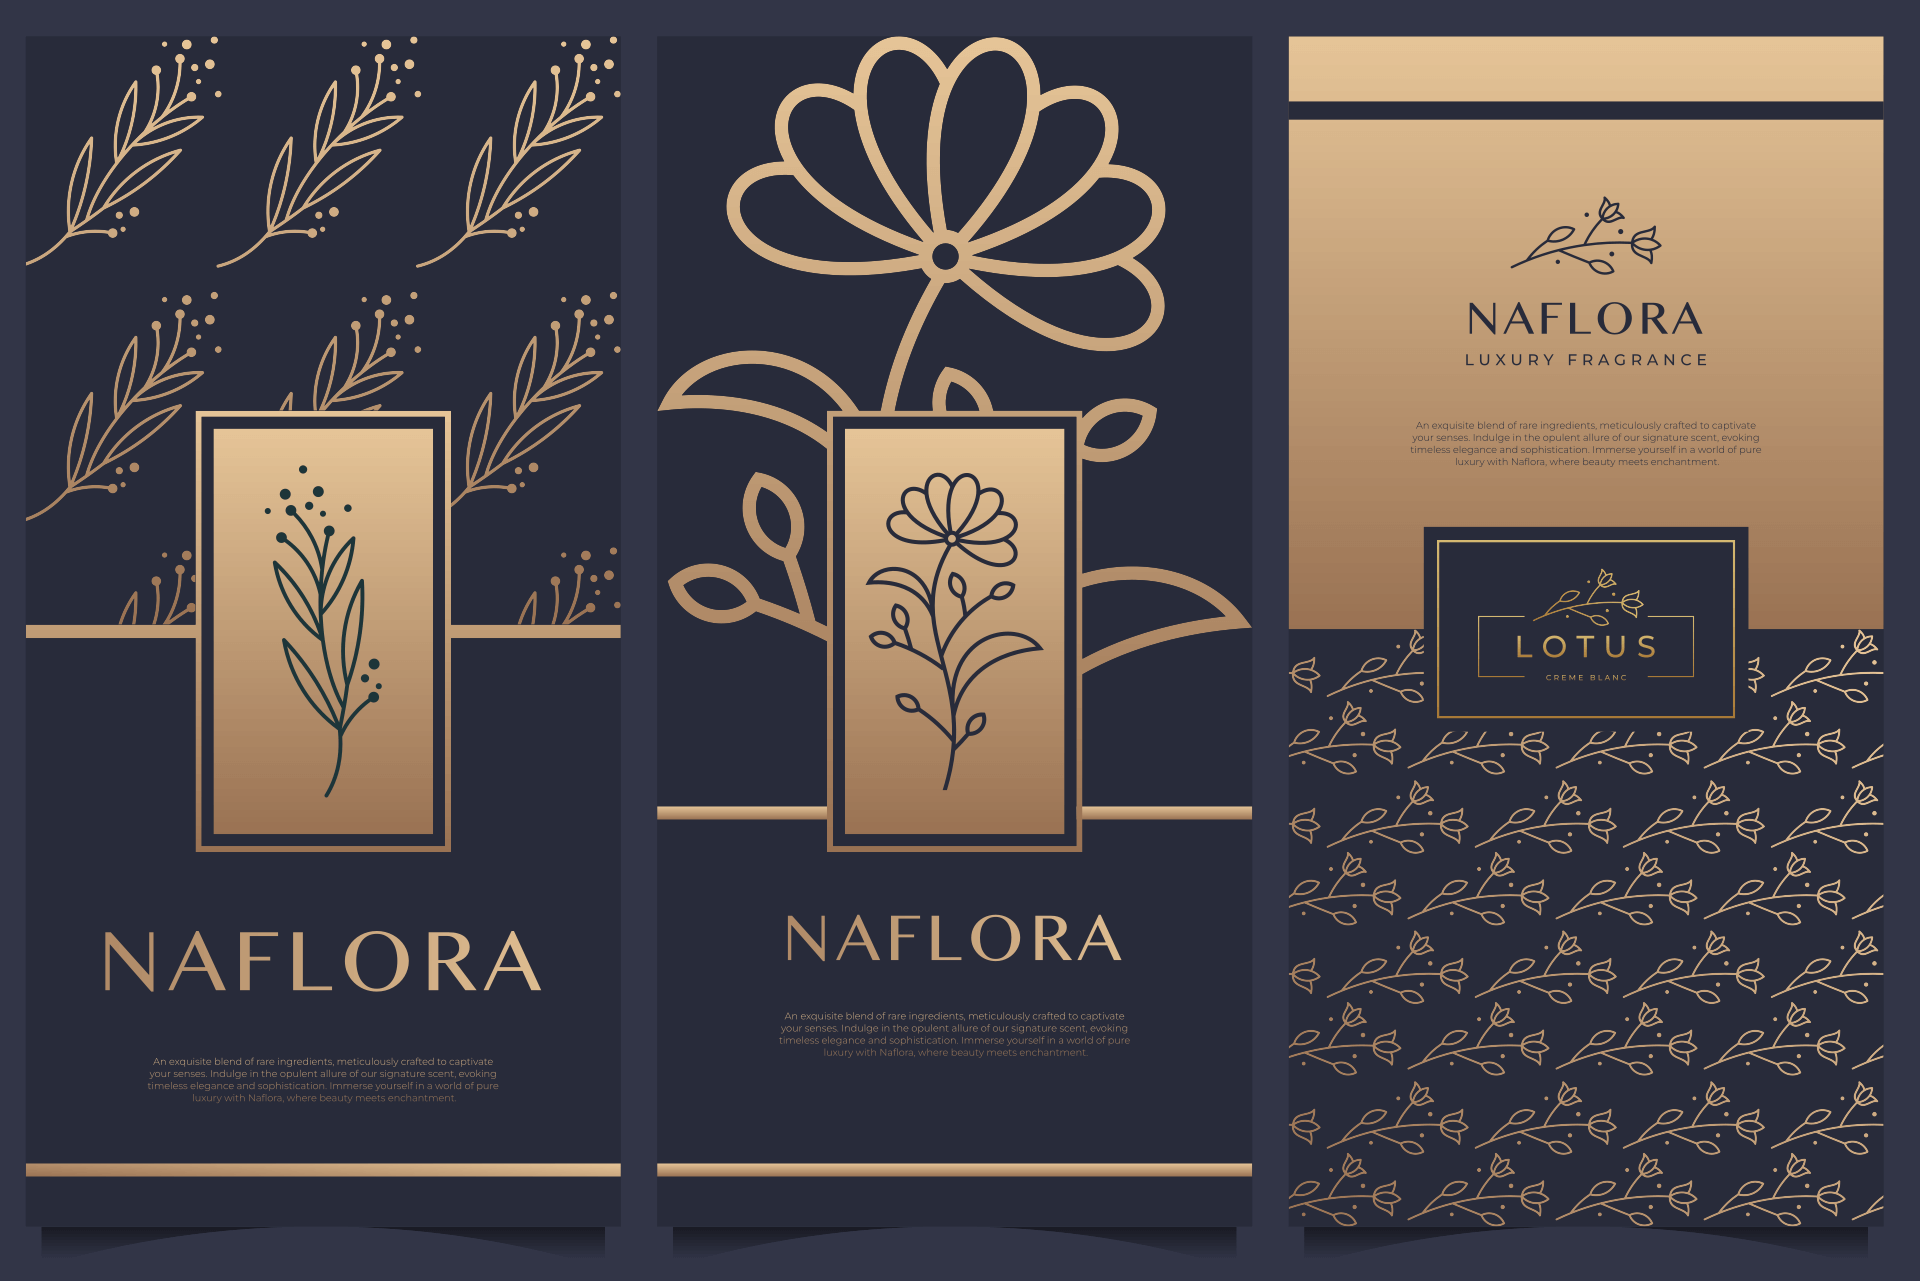 Naflora perfume packaging